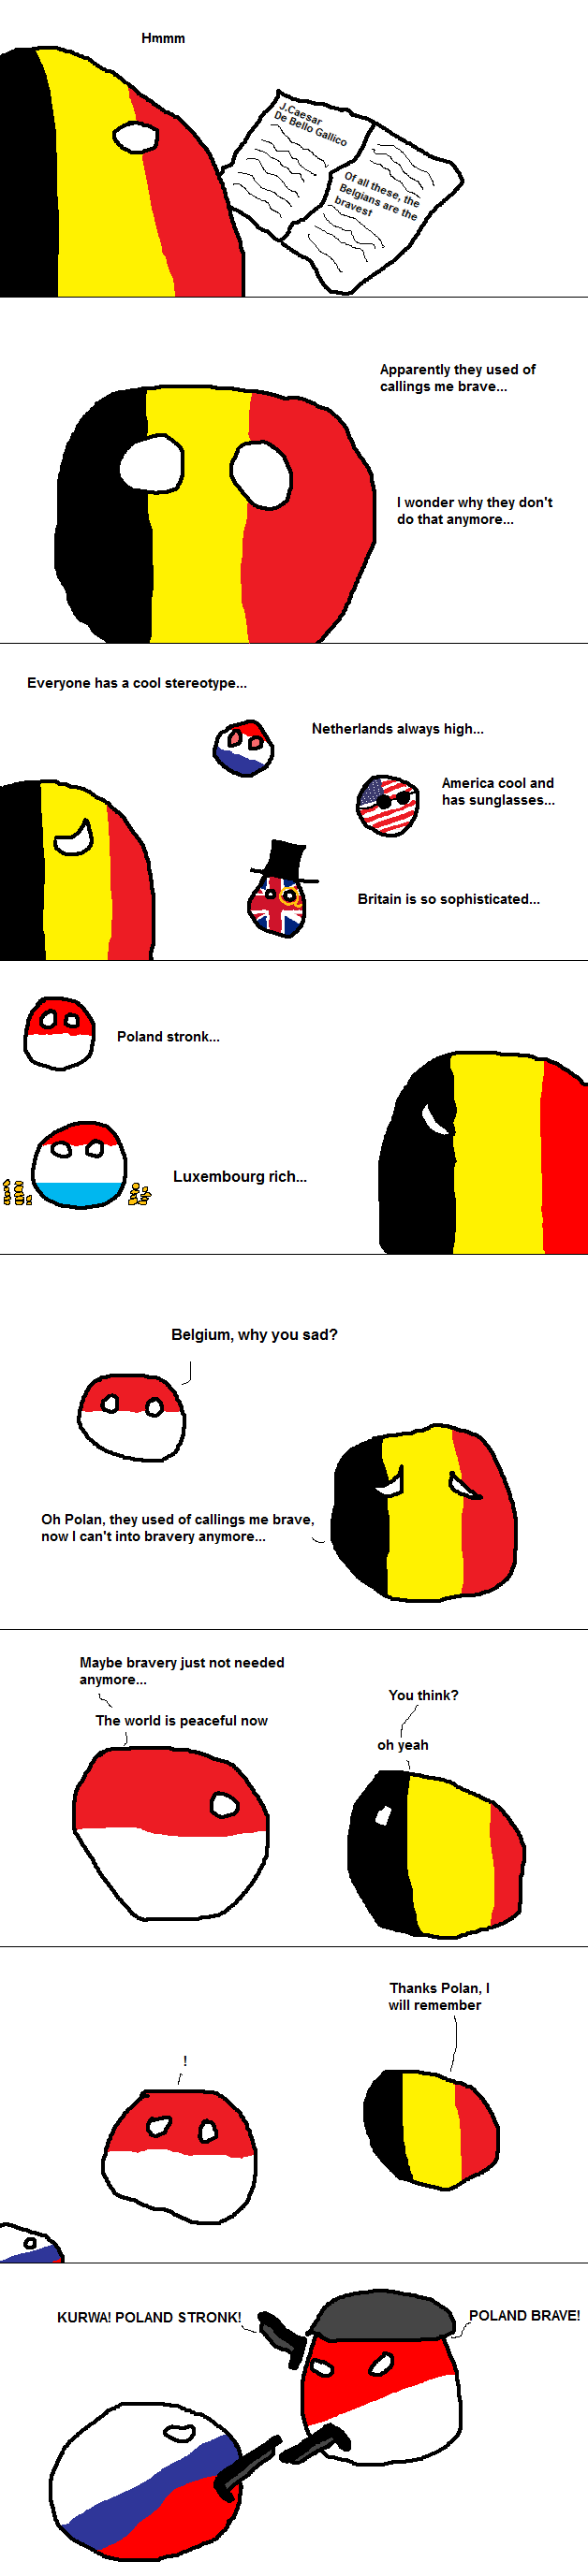 Belgium can't into polandball wednesday